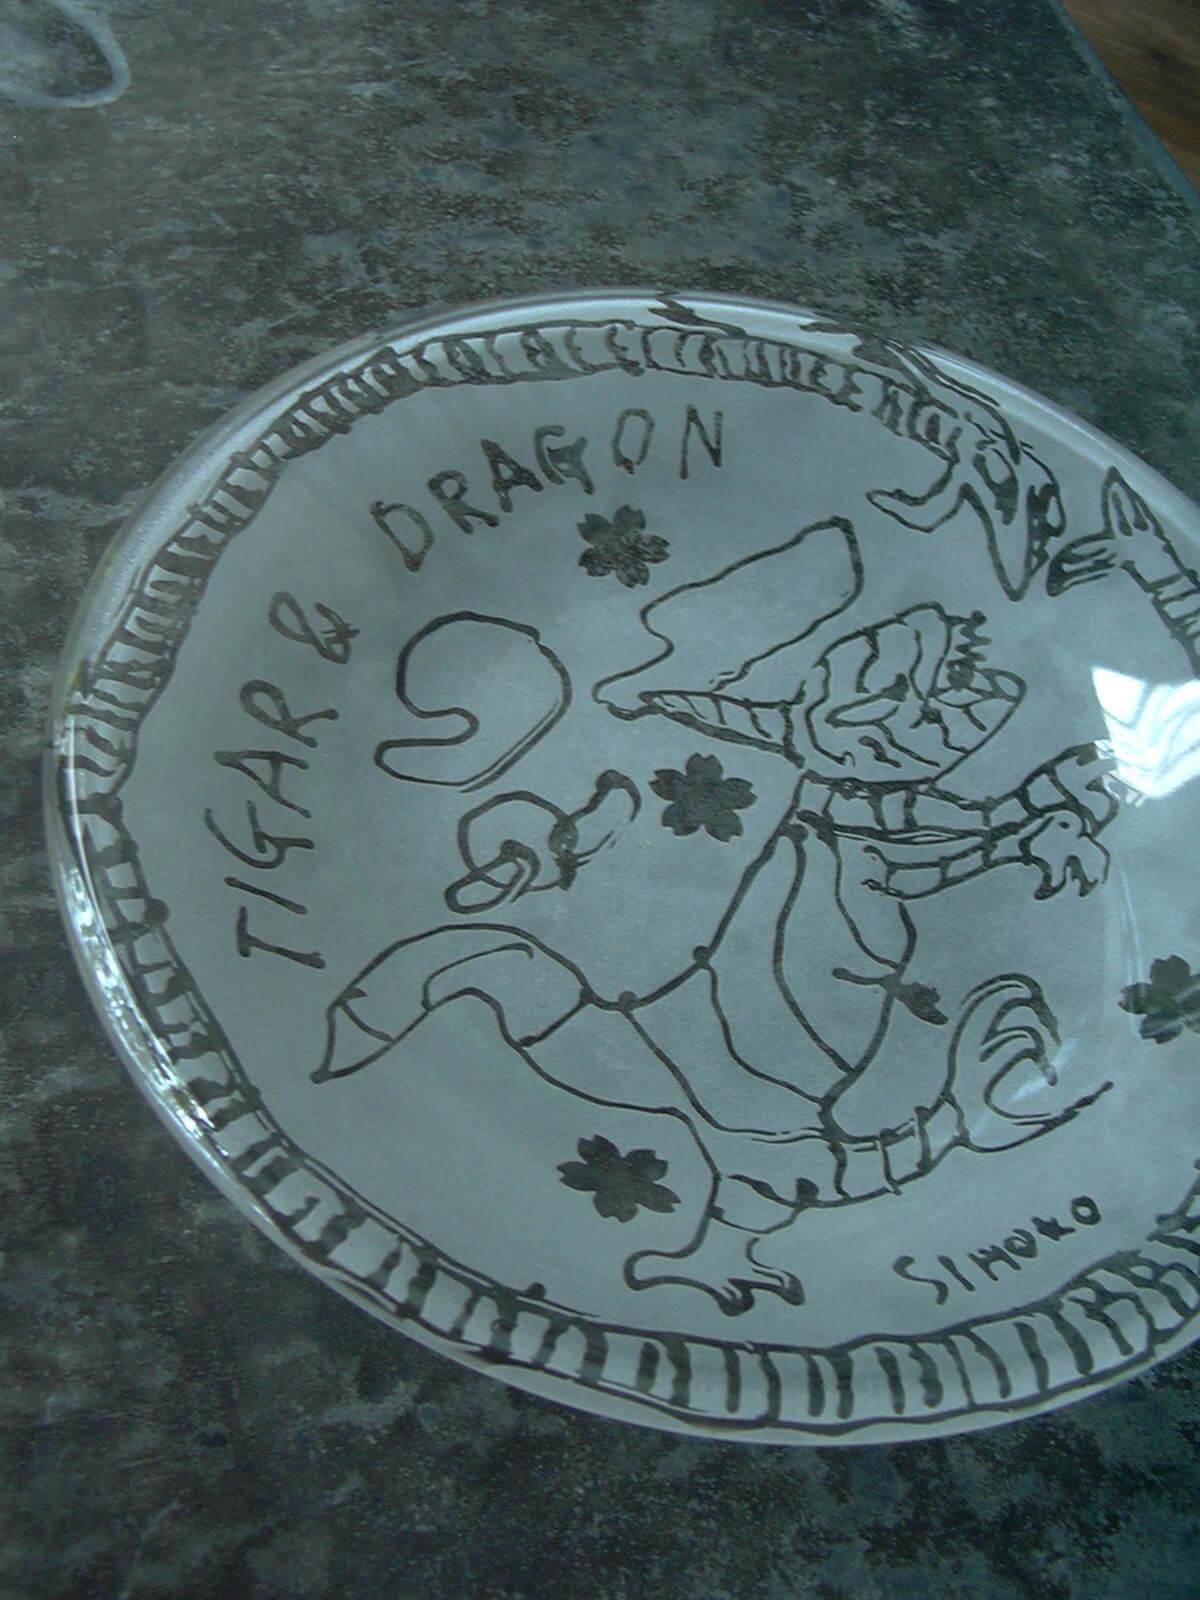 芸術の家で作った夏の工作、タイガー&ドラゴンのイラストが描かれたガラスのお皿